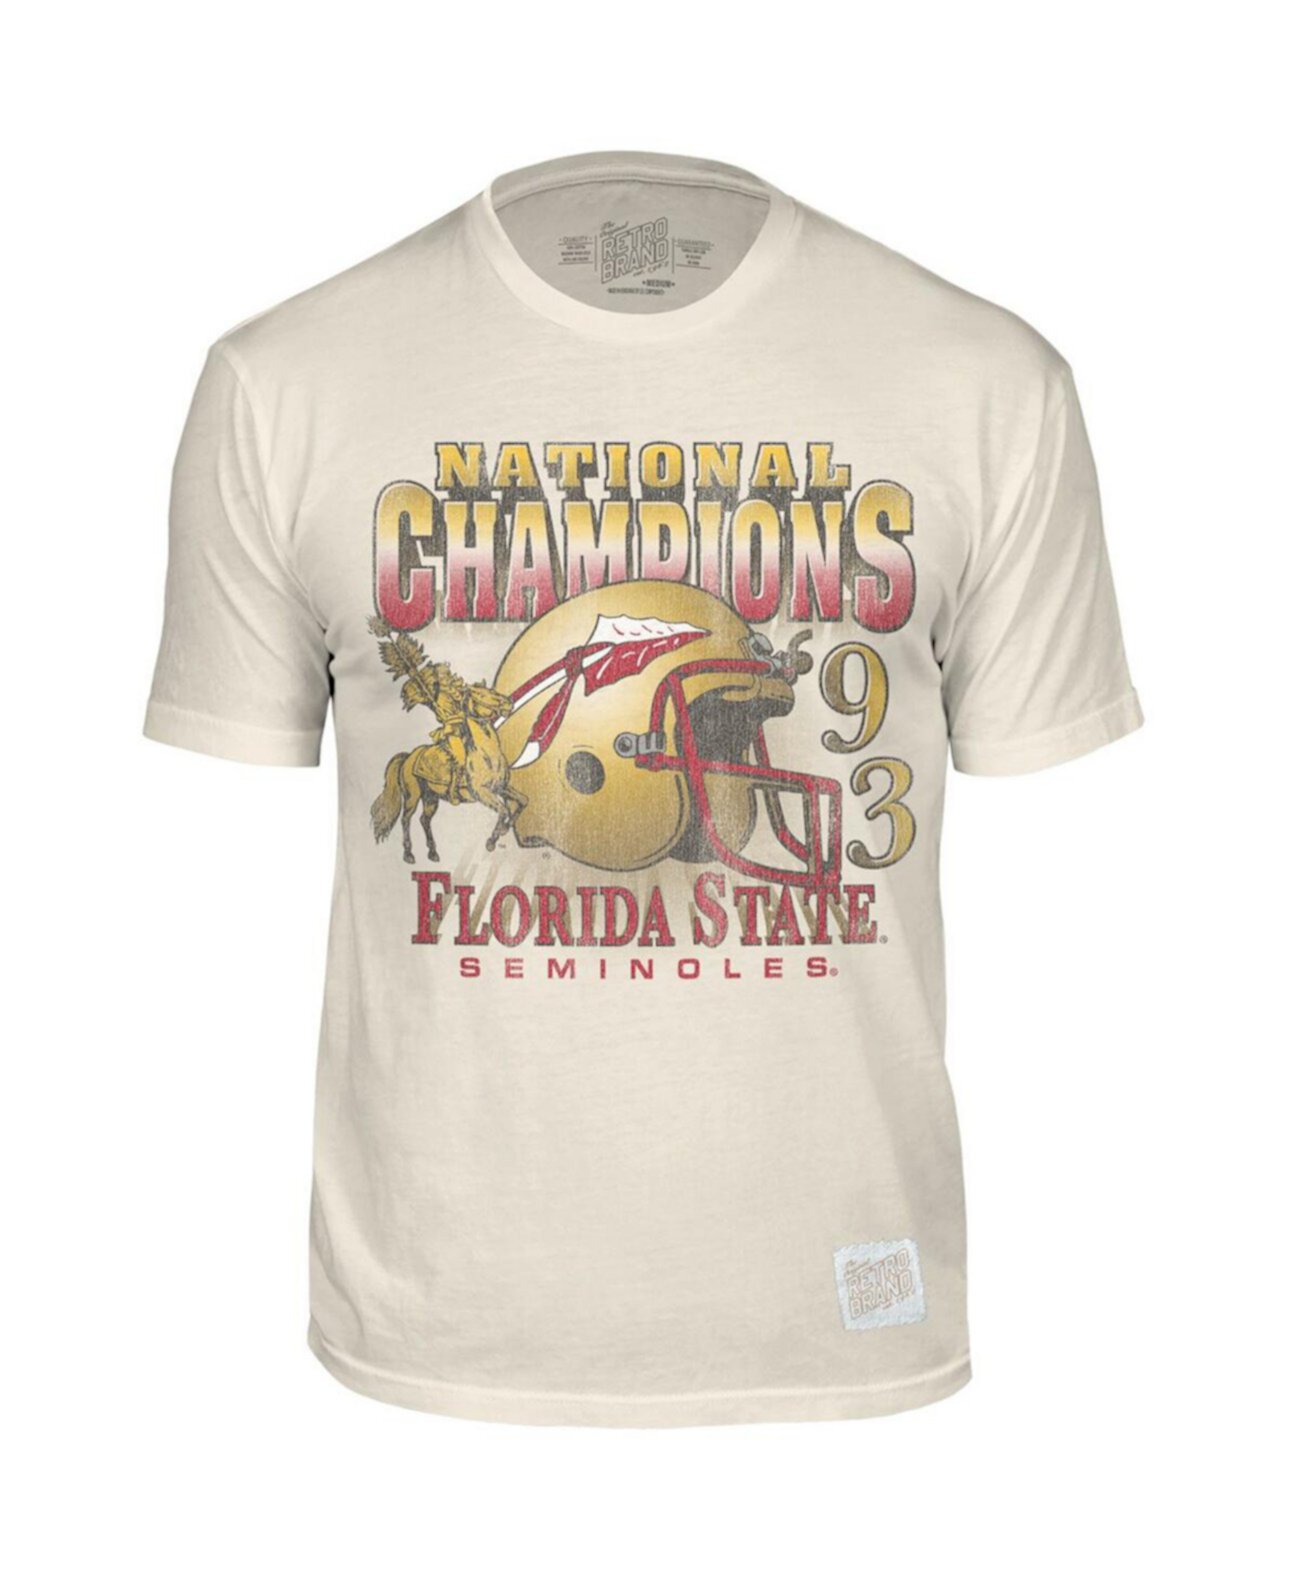 Мужская кремовая рваная футболка в стиле ретро с изображением семинолов штата Флорида Original Retro Brand